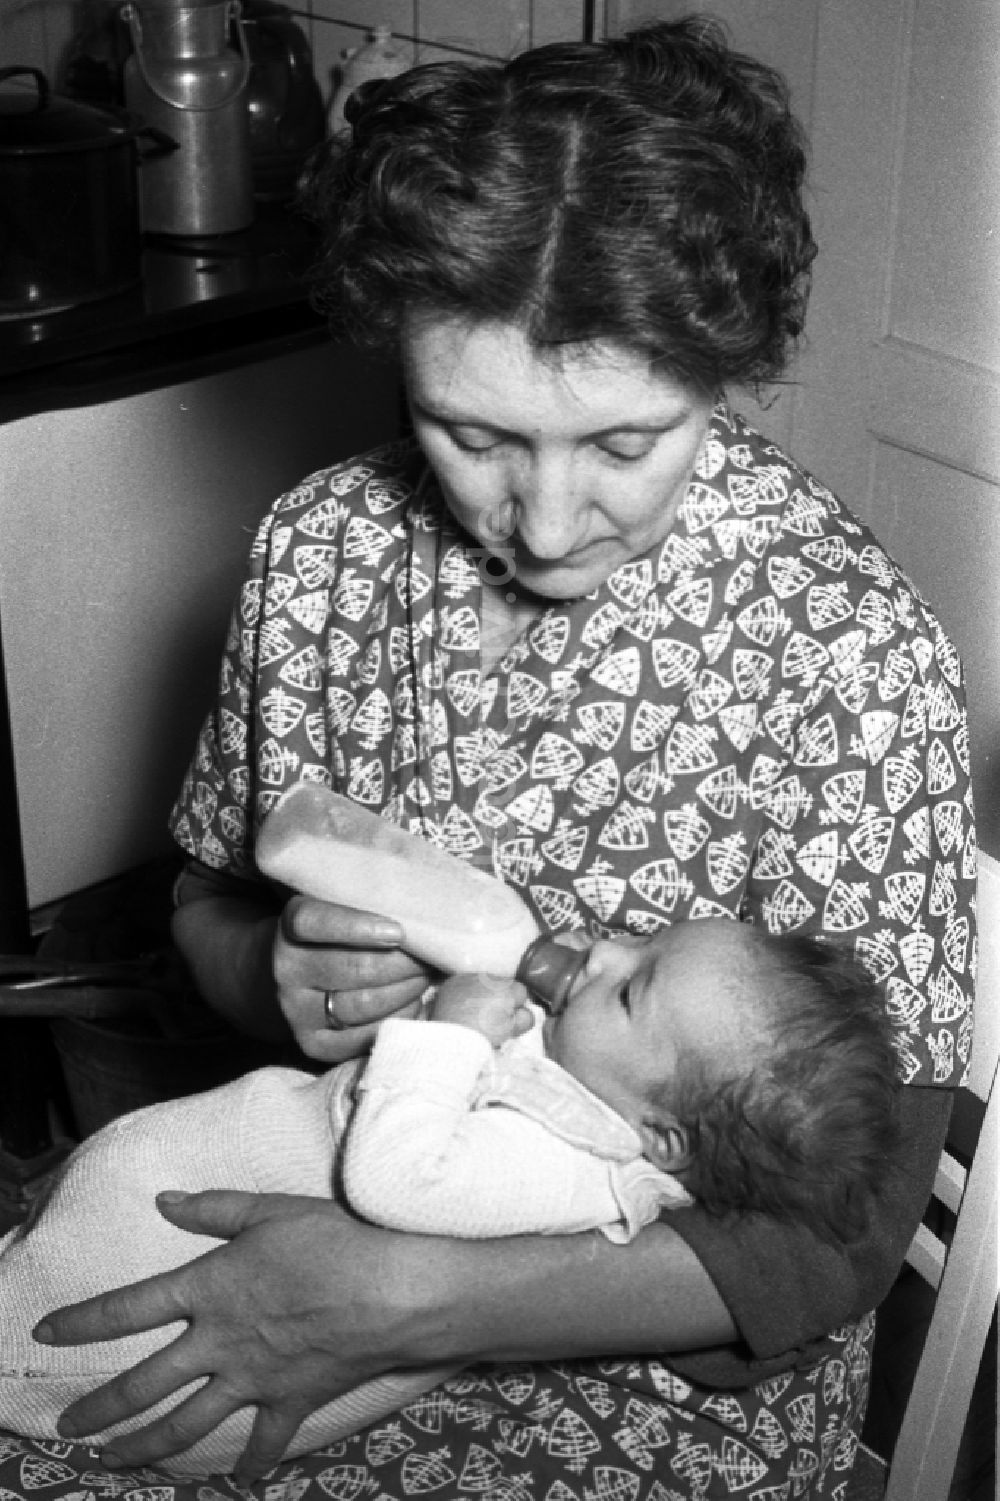 DDR-Bildarchiv: Merseburg - Eine Mutter gibt ihrem Baby die Nuckelflasche in Merseburg in Sachsen-Anhalt in der DDR